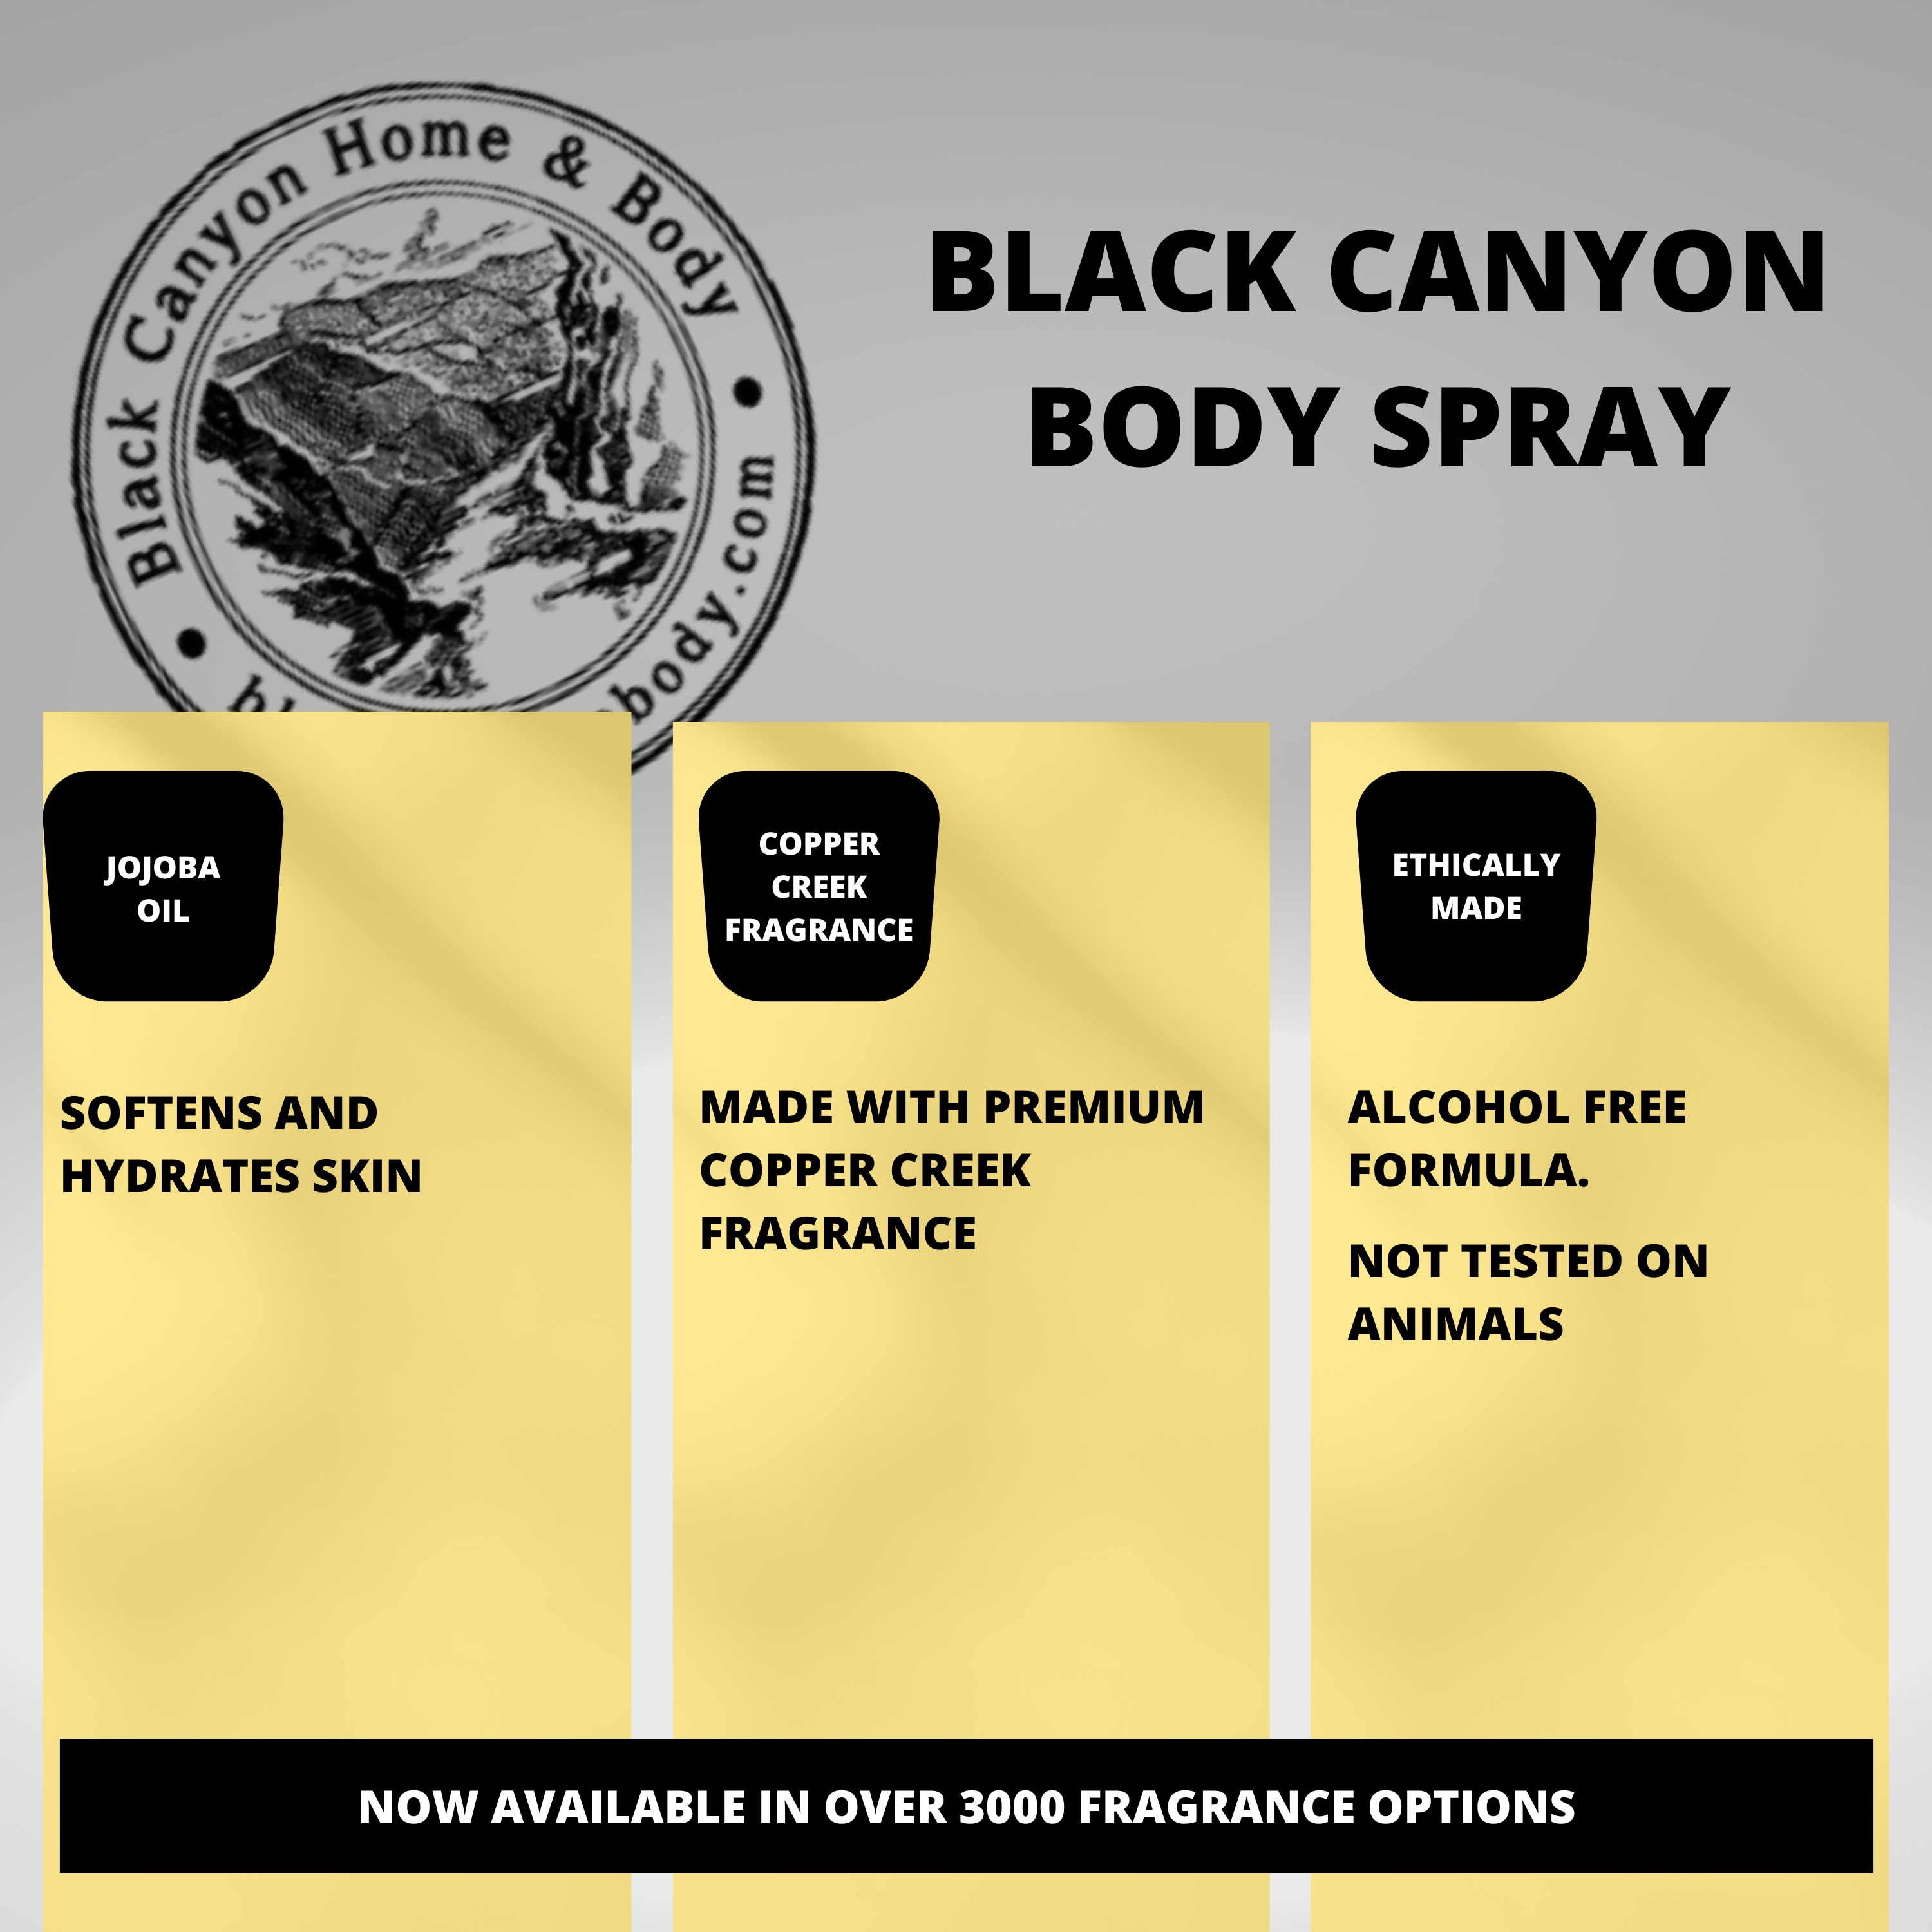 Black Canyon Lemon & Lime Zest Scented Body Spray